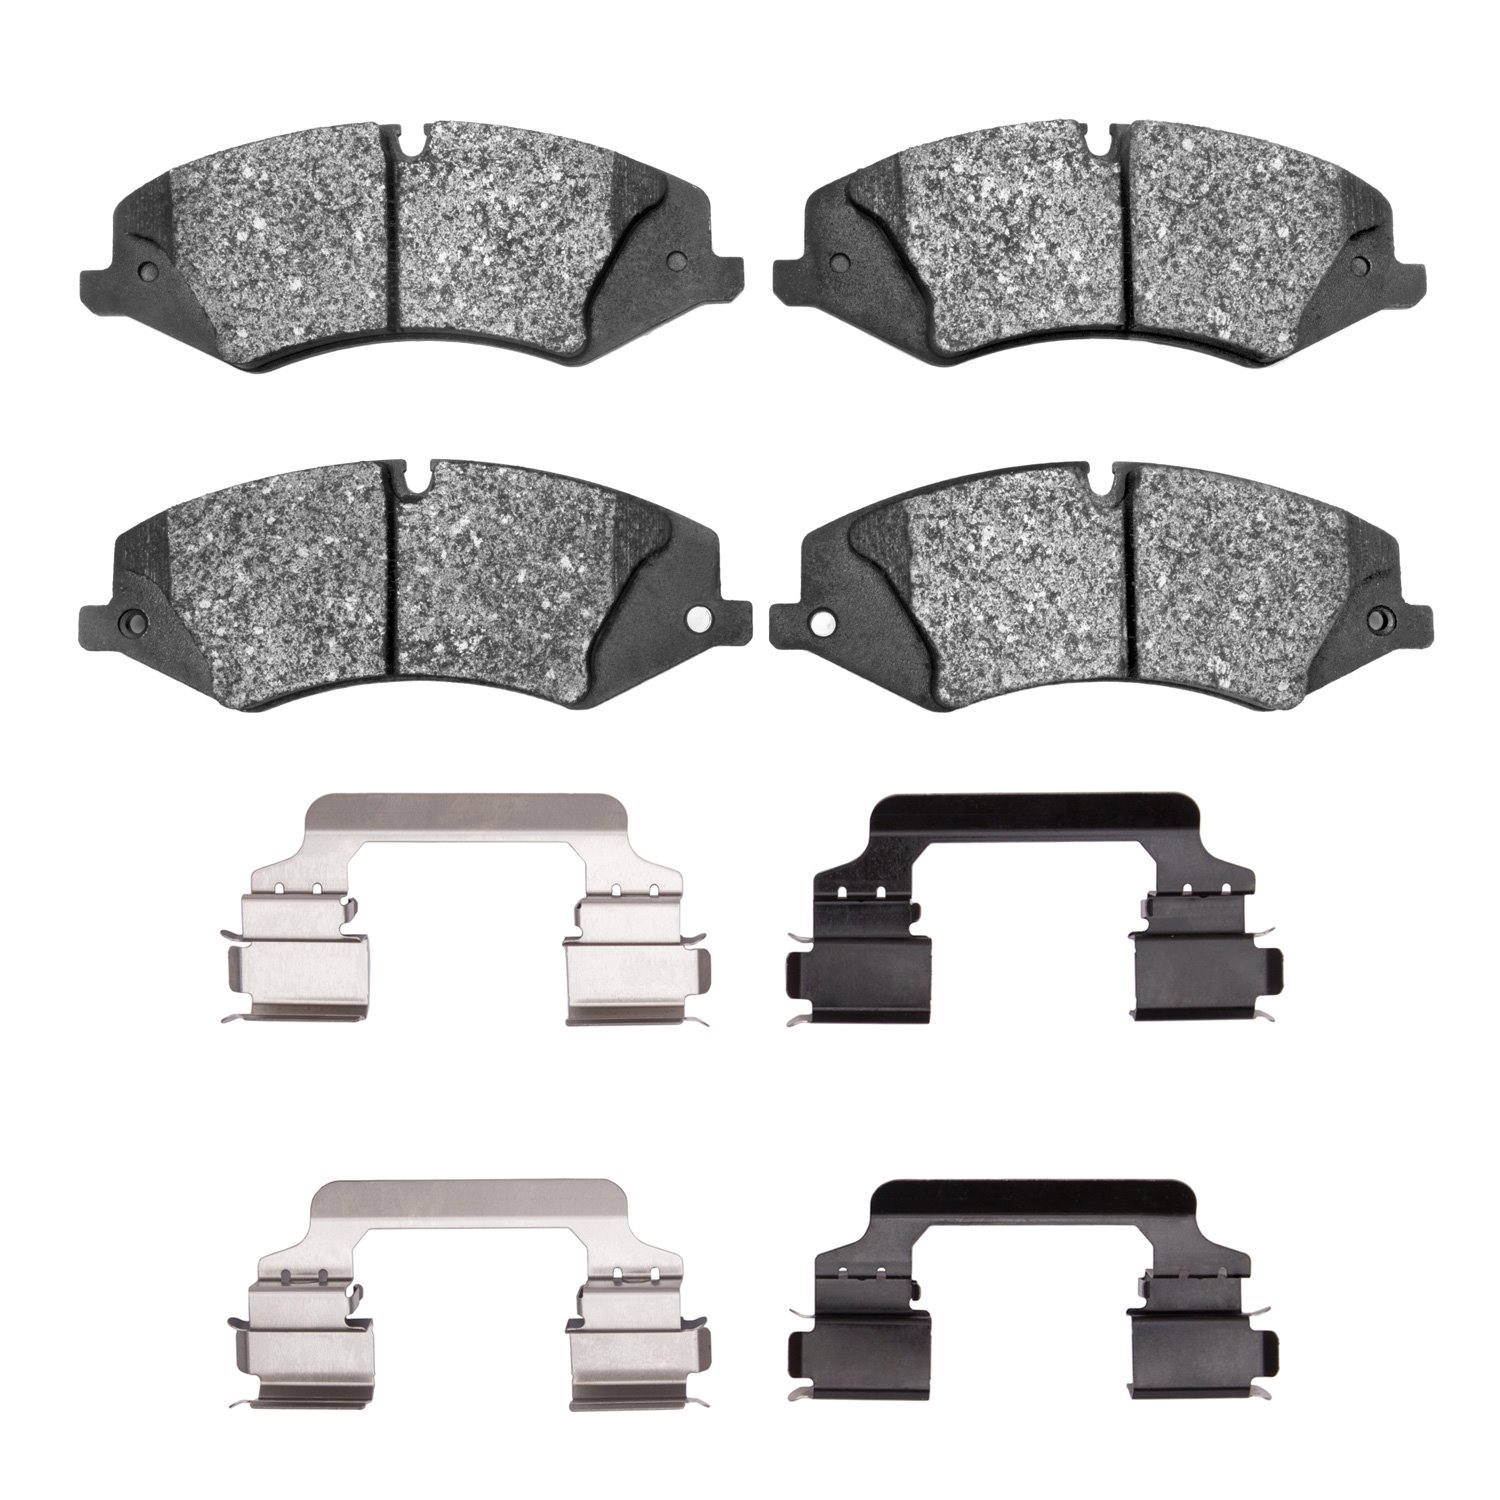 1600-1479-01 5000 Euro Ceramic Brake Pads & Hardware Kit, 2010-2017 Land Rover, Position: Front